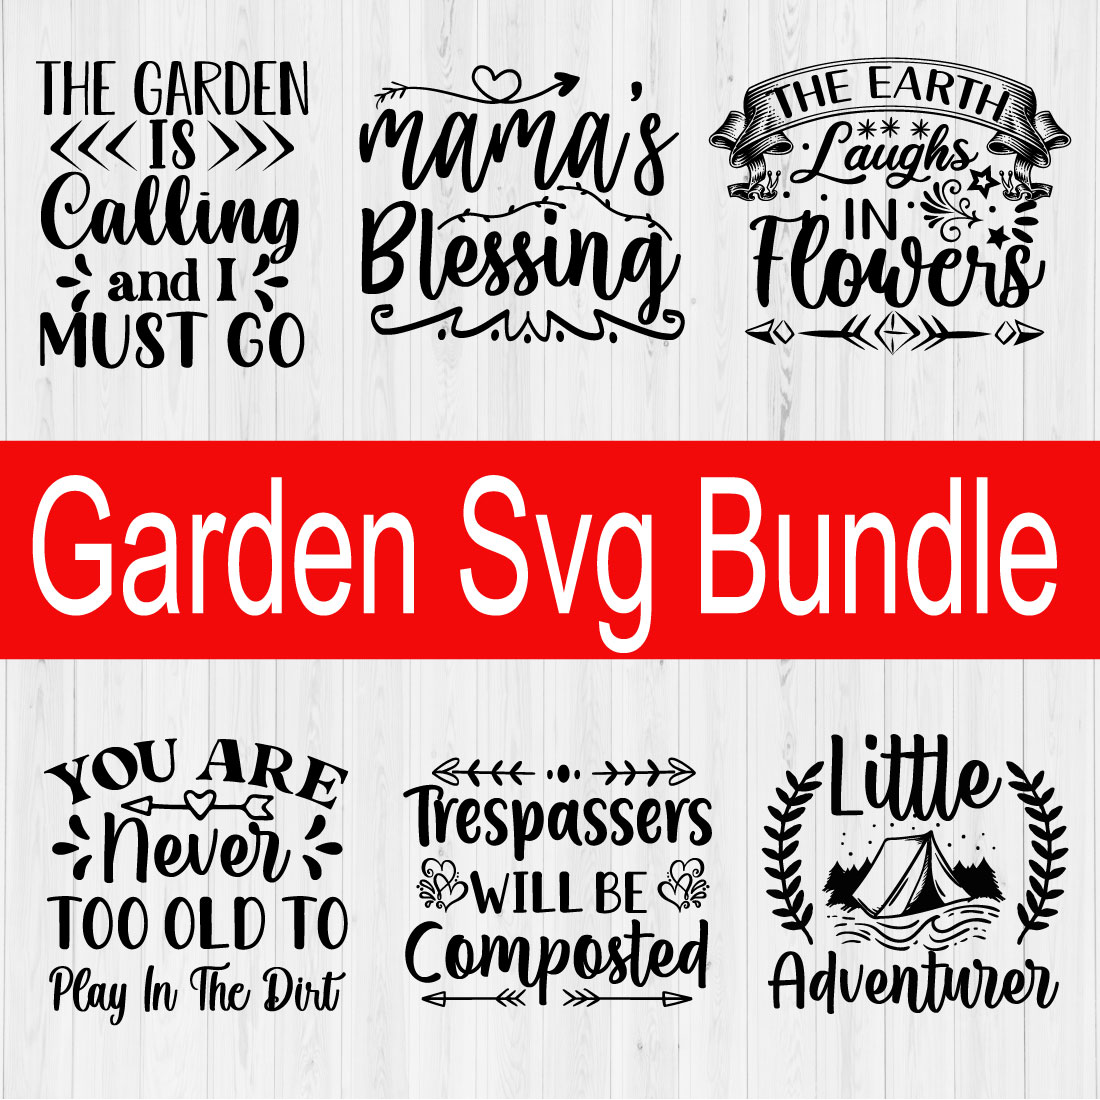 Garden T-shirt Design Bundle Vol7 cover image.